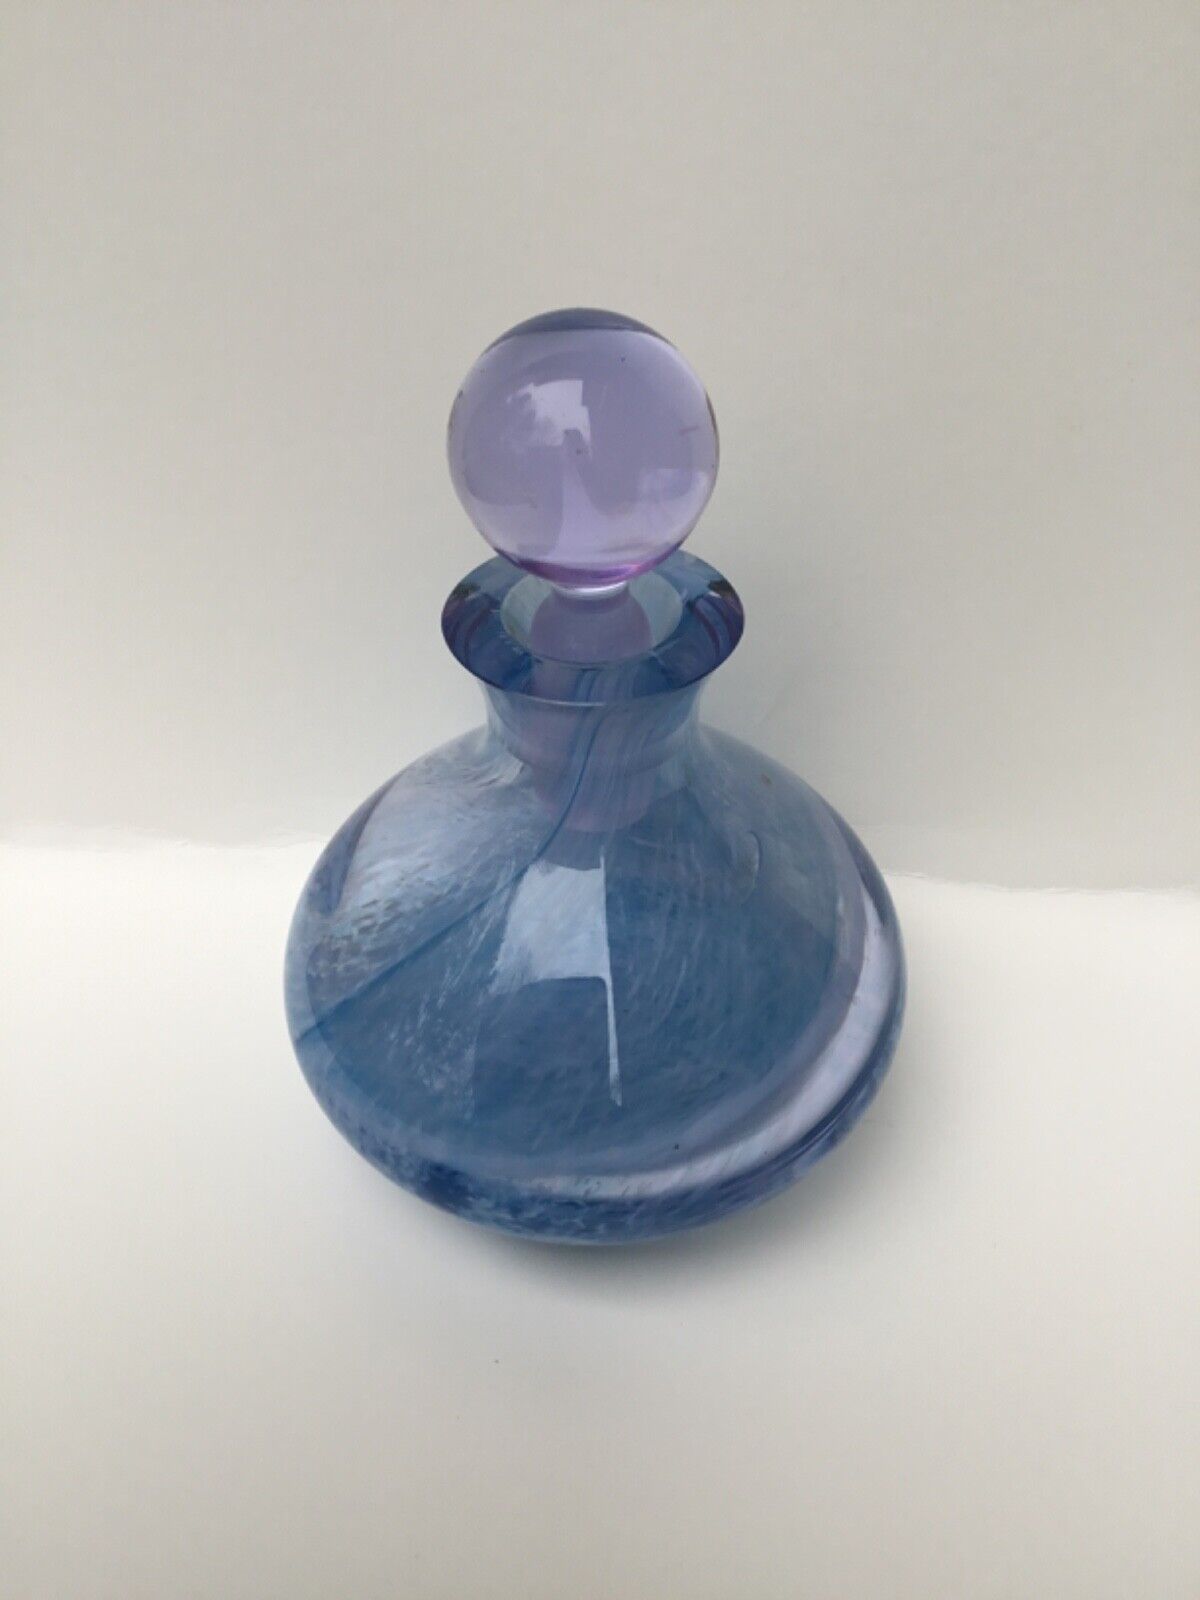 Vintage Caithness glass perfume bottle stopper blue purple swirl handmade